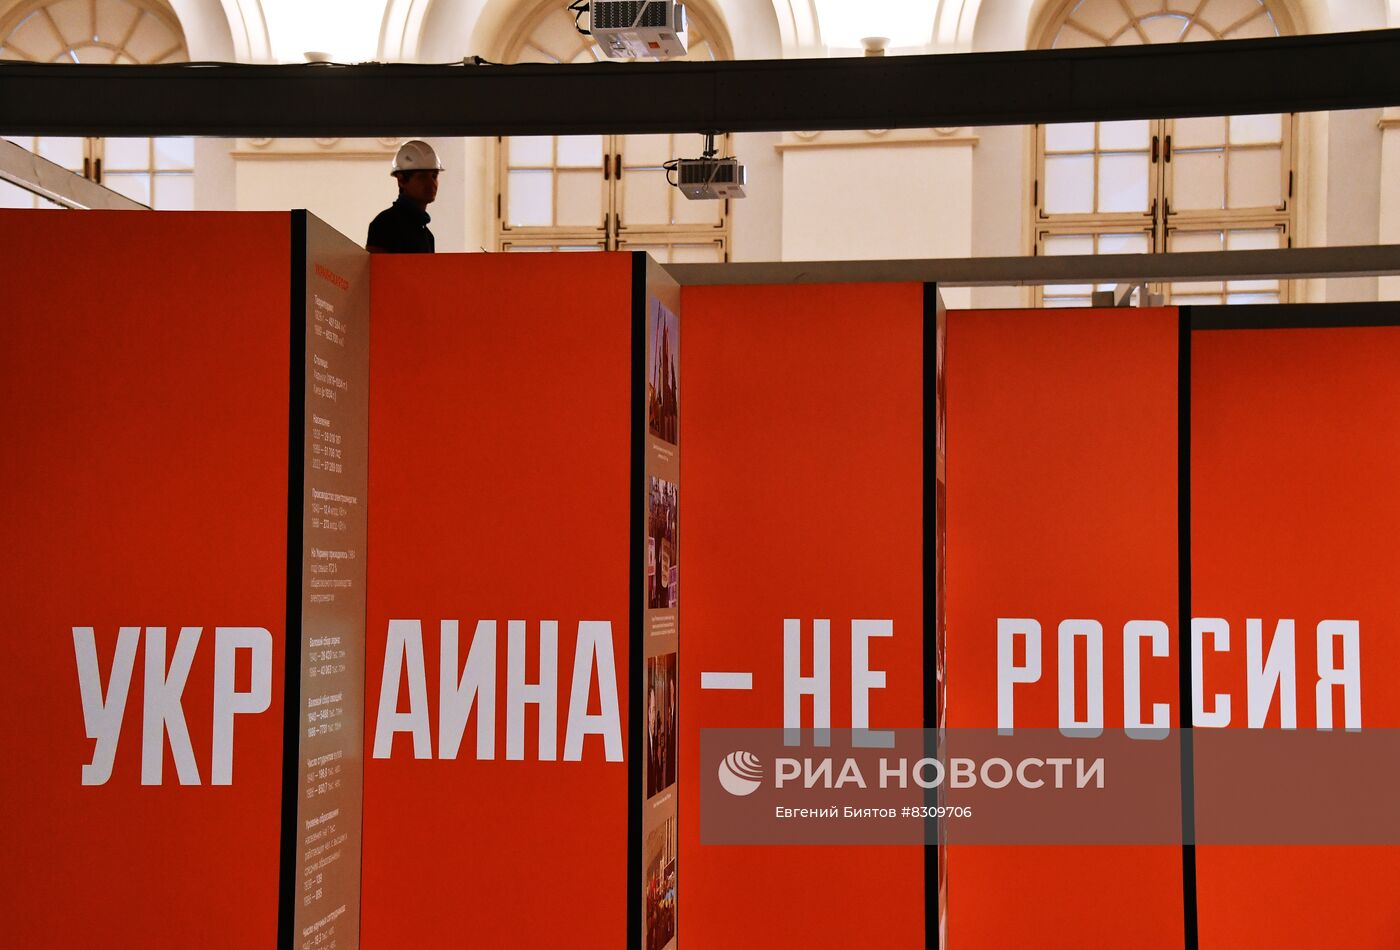 Показ выставки "Украина. На переломах эпох" в Москве